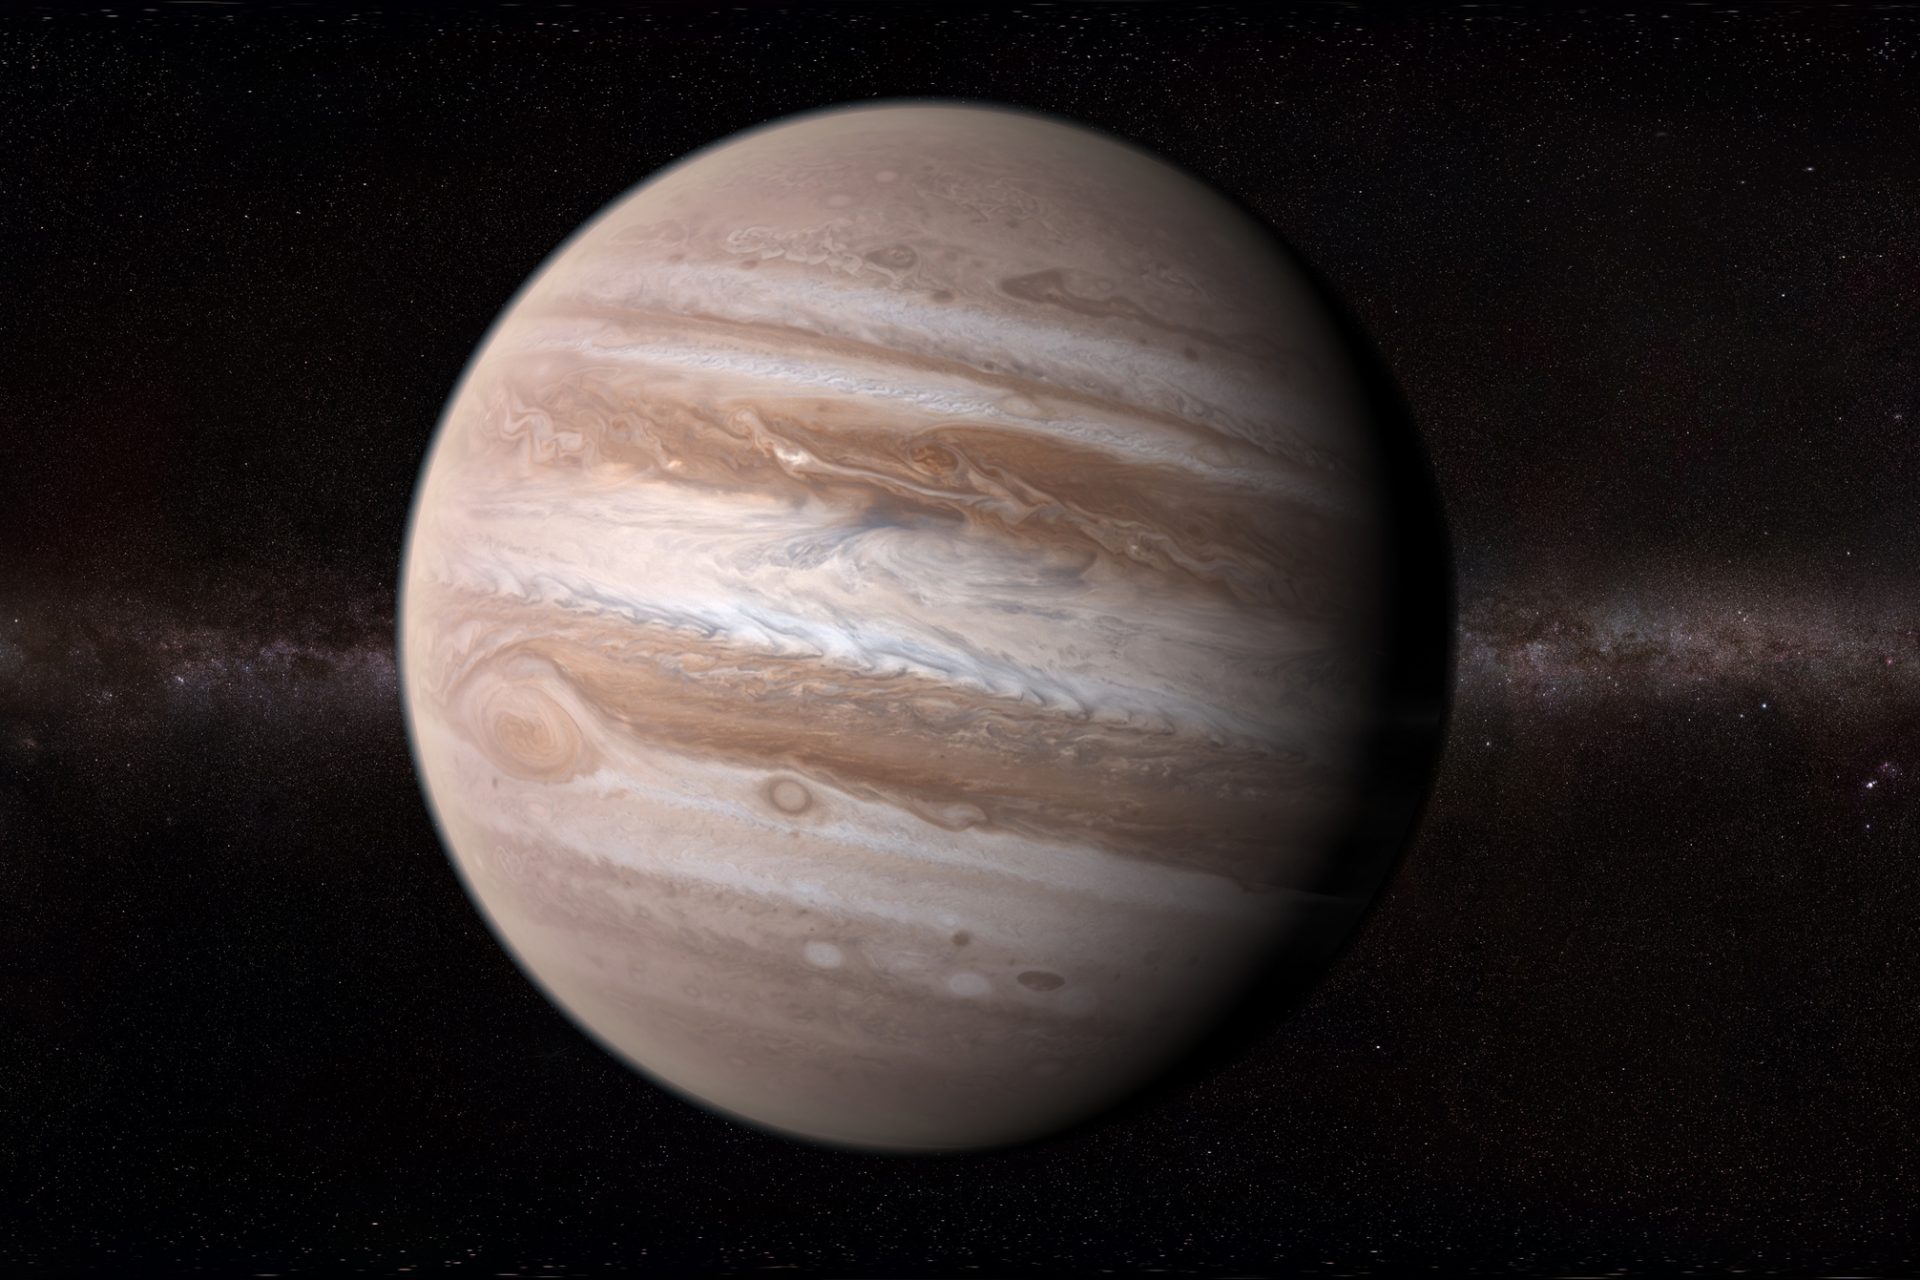 Découvrez les images époustouflantes de Jupiter prises par la mission Juno